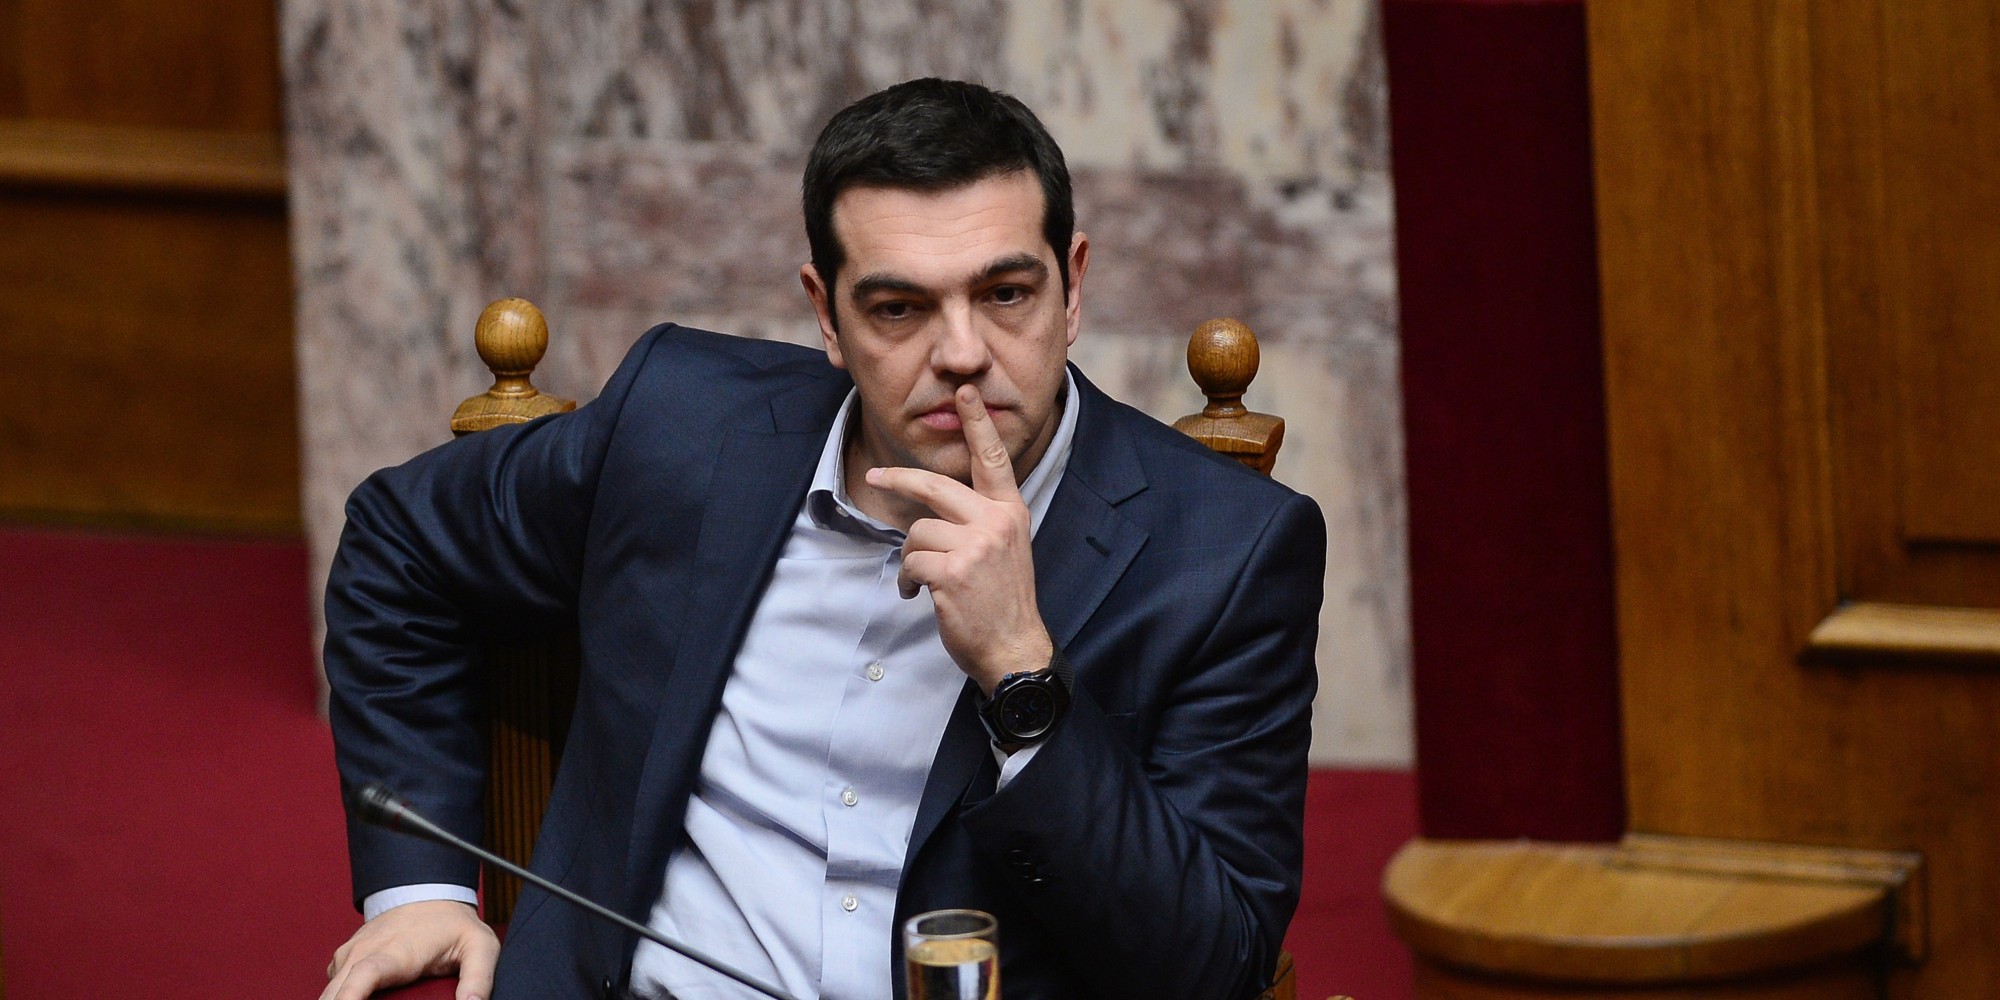 Η άφιξη και οι επισκέψεις του Πρωθυπουργού φέρνει... αναβρασμό - Έρχεται ο Αλέξης Τσίπρας στην Κρήτη